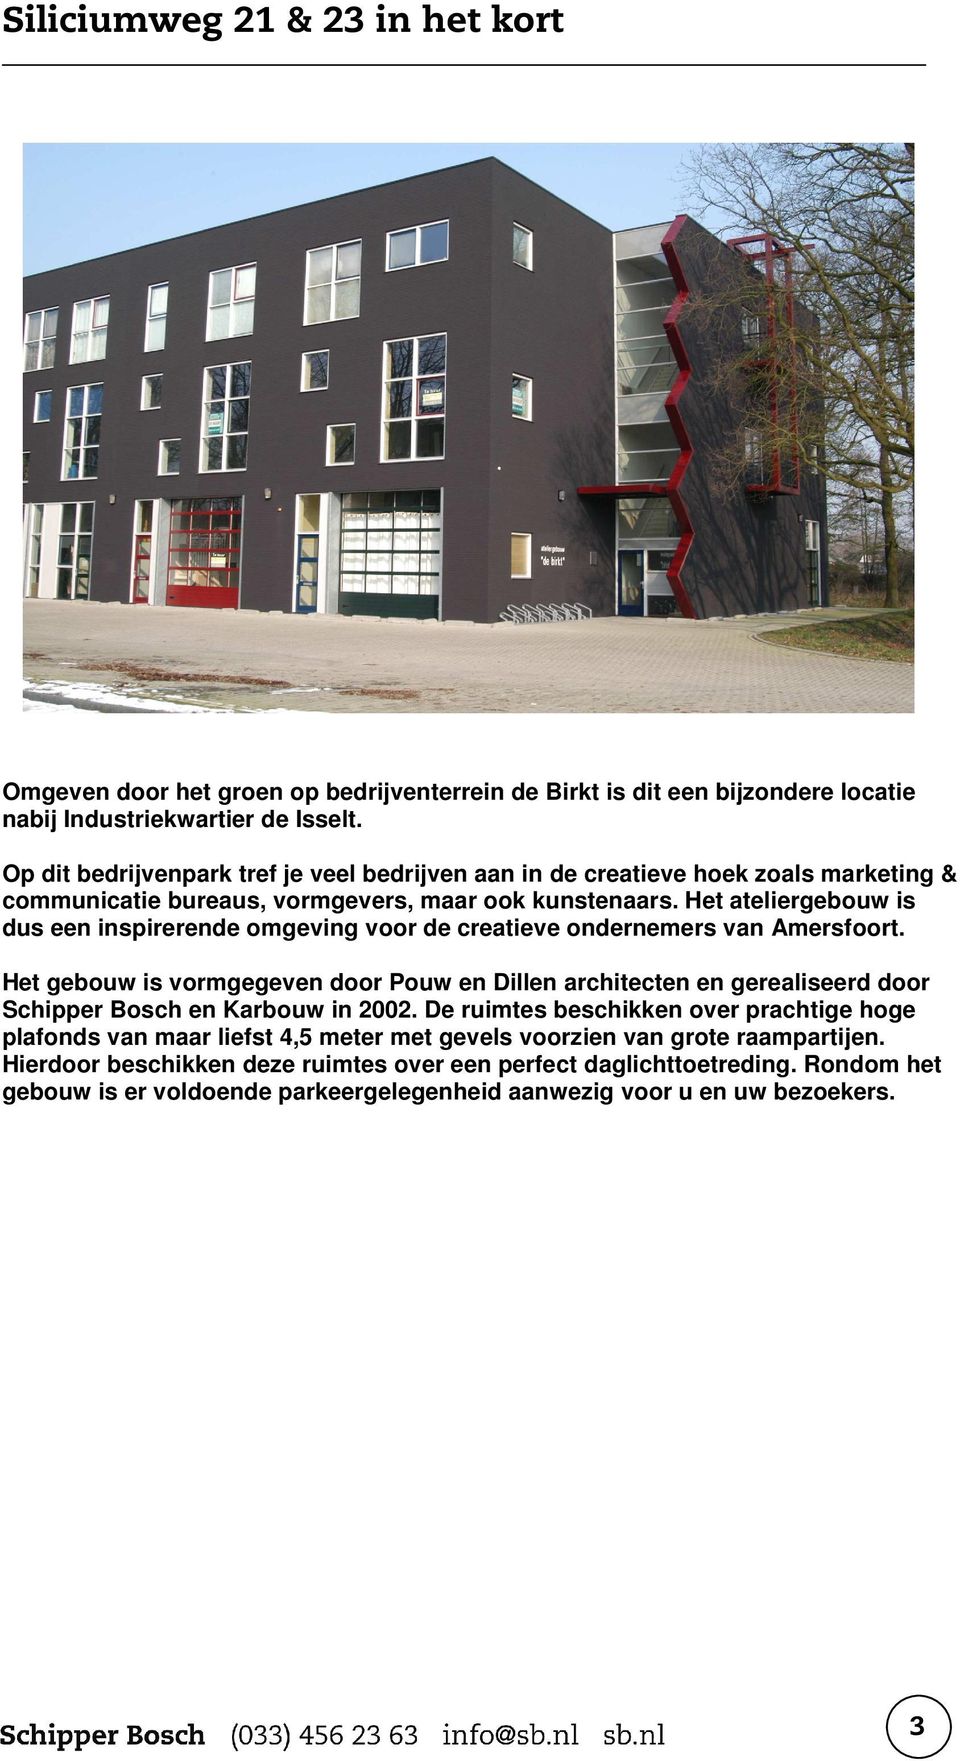 Het ateliergebouw is dus een inspirerende omgeving voor de creatieve ondernemers van Amersfoort.